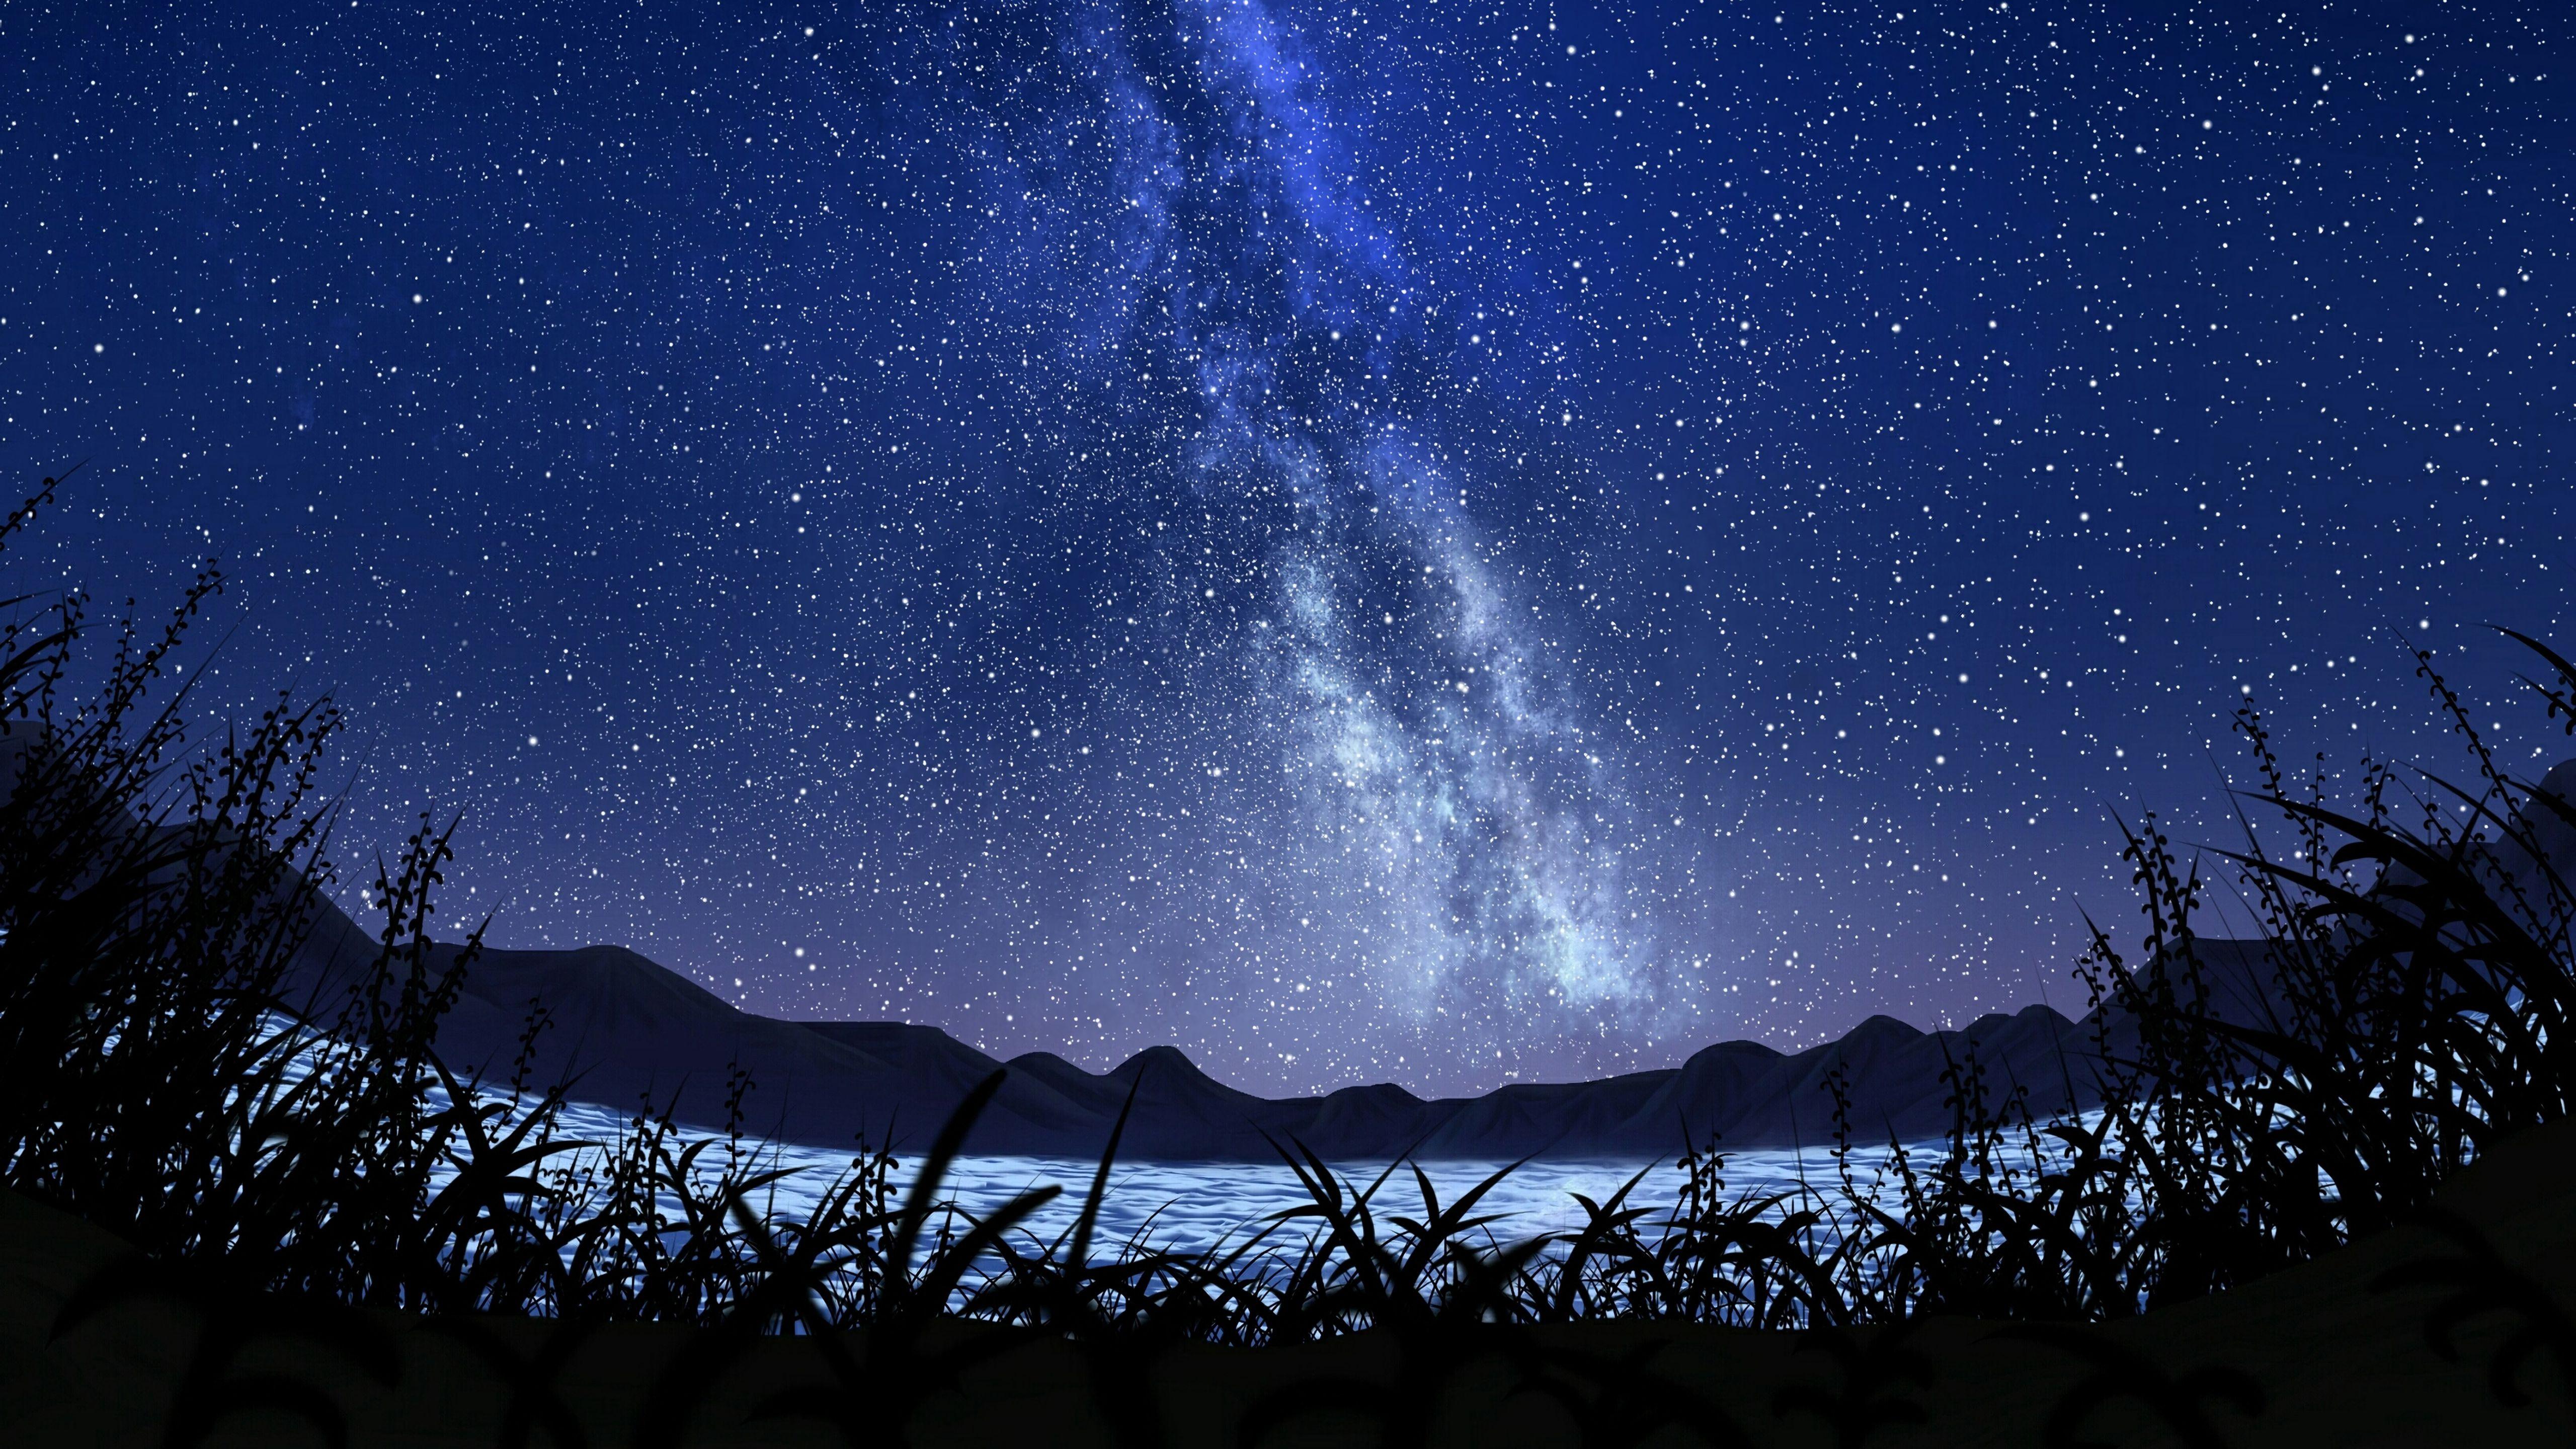 Tận hưởng cái mát của bầu trời đêm trên hình nền bầu trời đêm 5K chất lượng cao. Hùng vĩ và tràn đầy bí ẩn, hình ảnh sẽ mang lại cảm hứng cho bạn để tận hưởng cuộc sống của mình và giấc mơ của bạn. Nhấn vào hình ảnh để tải về và ngắm nhìn vẻ đẹp tuyệt vời của bầu trời đêm ngay trên màn hình máy tính của bạn.